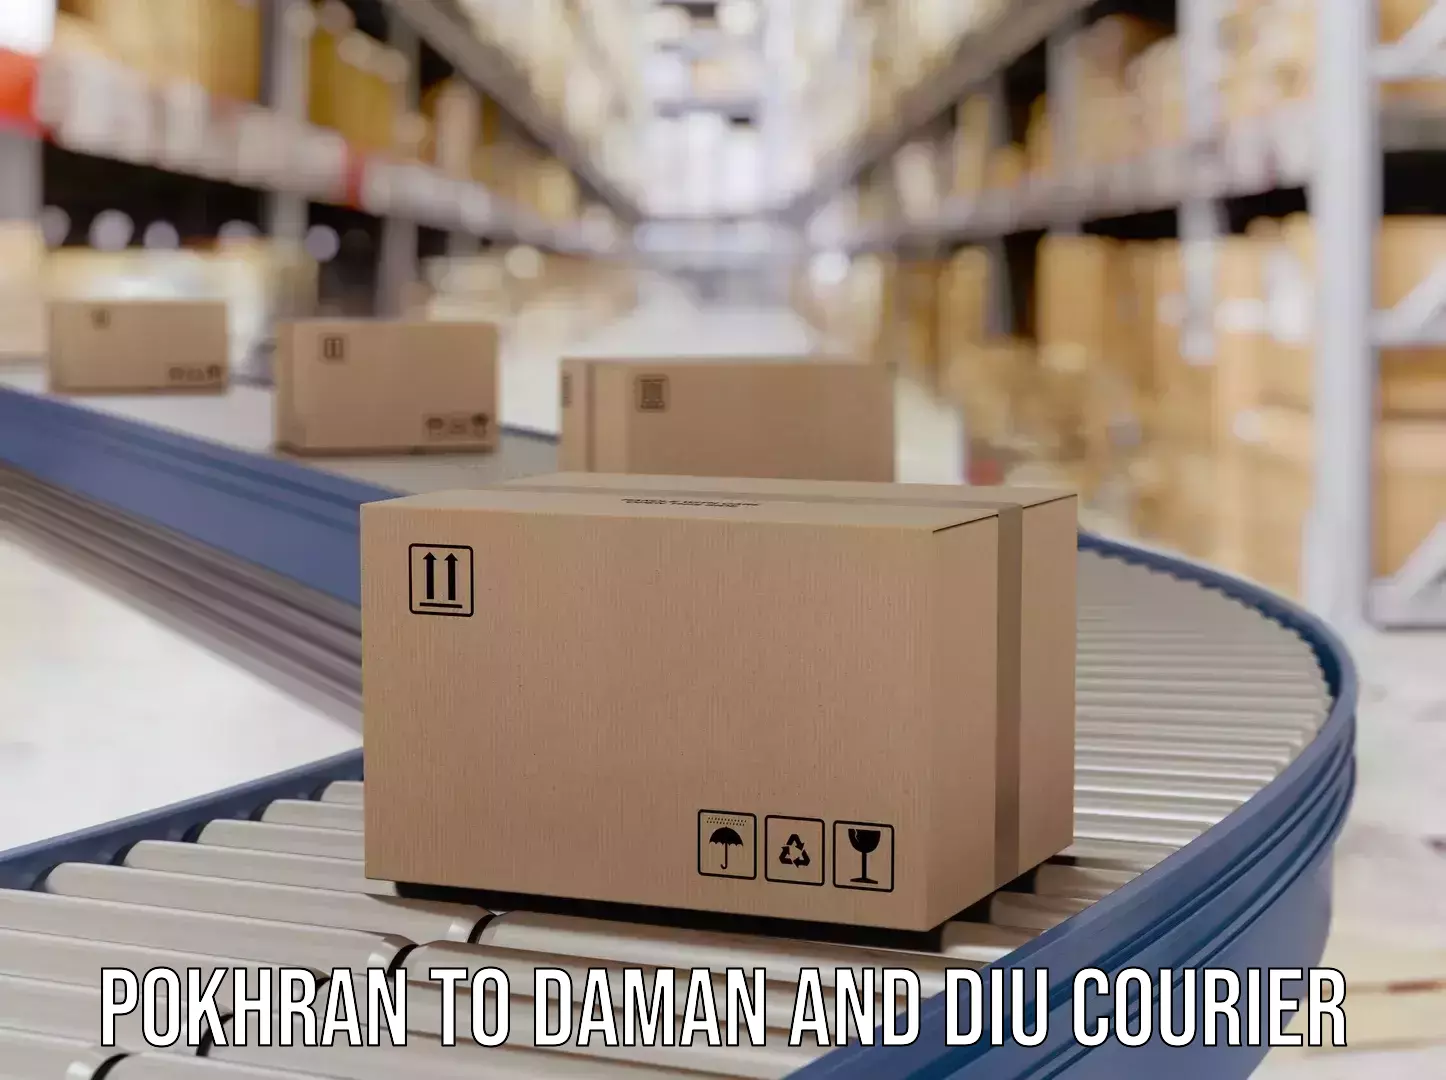 Courier rate comparison Pokhran to Daman